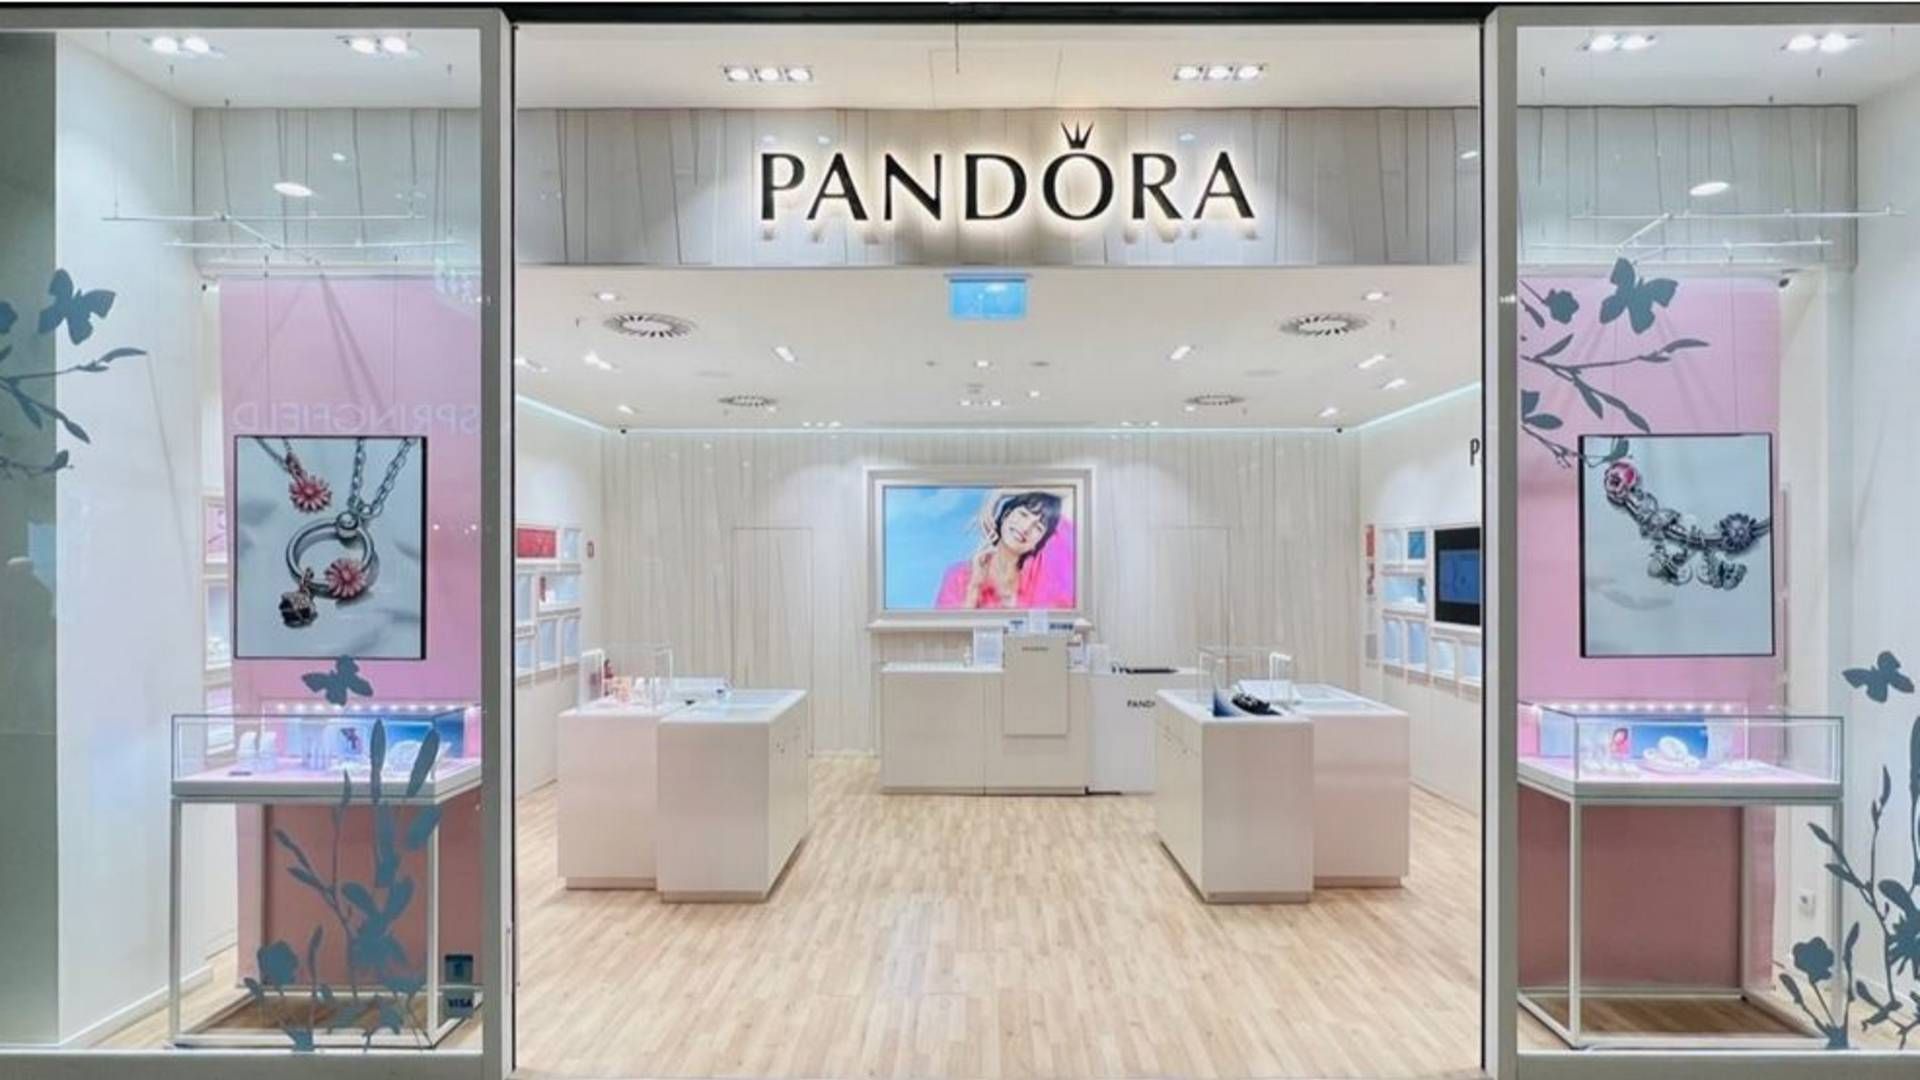 Salget i Pandoras egne butikker verden over steg med 21 pct. i andet kvartal efter genåbningerne. | Foto: Pandora/PR